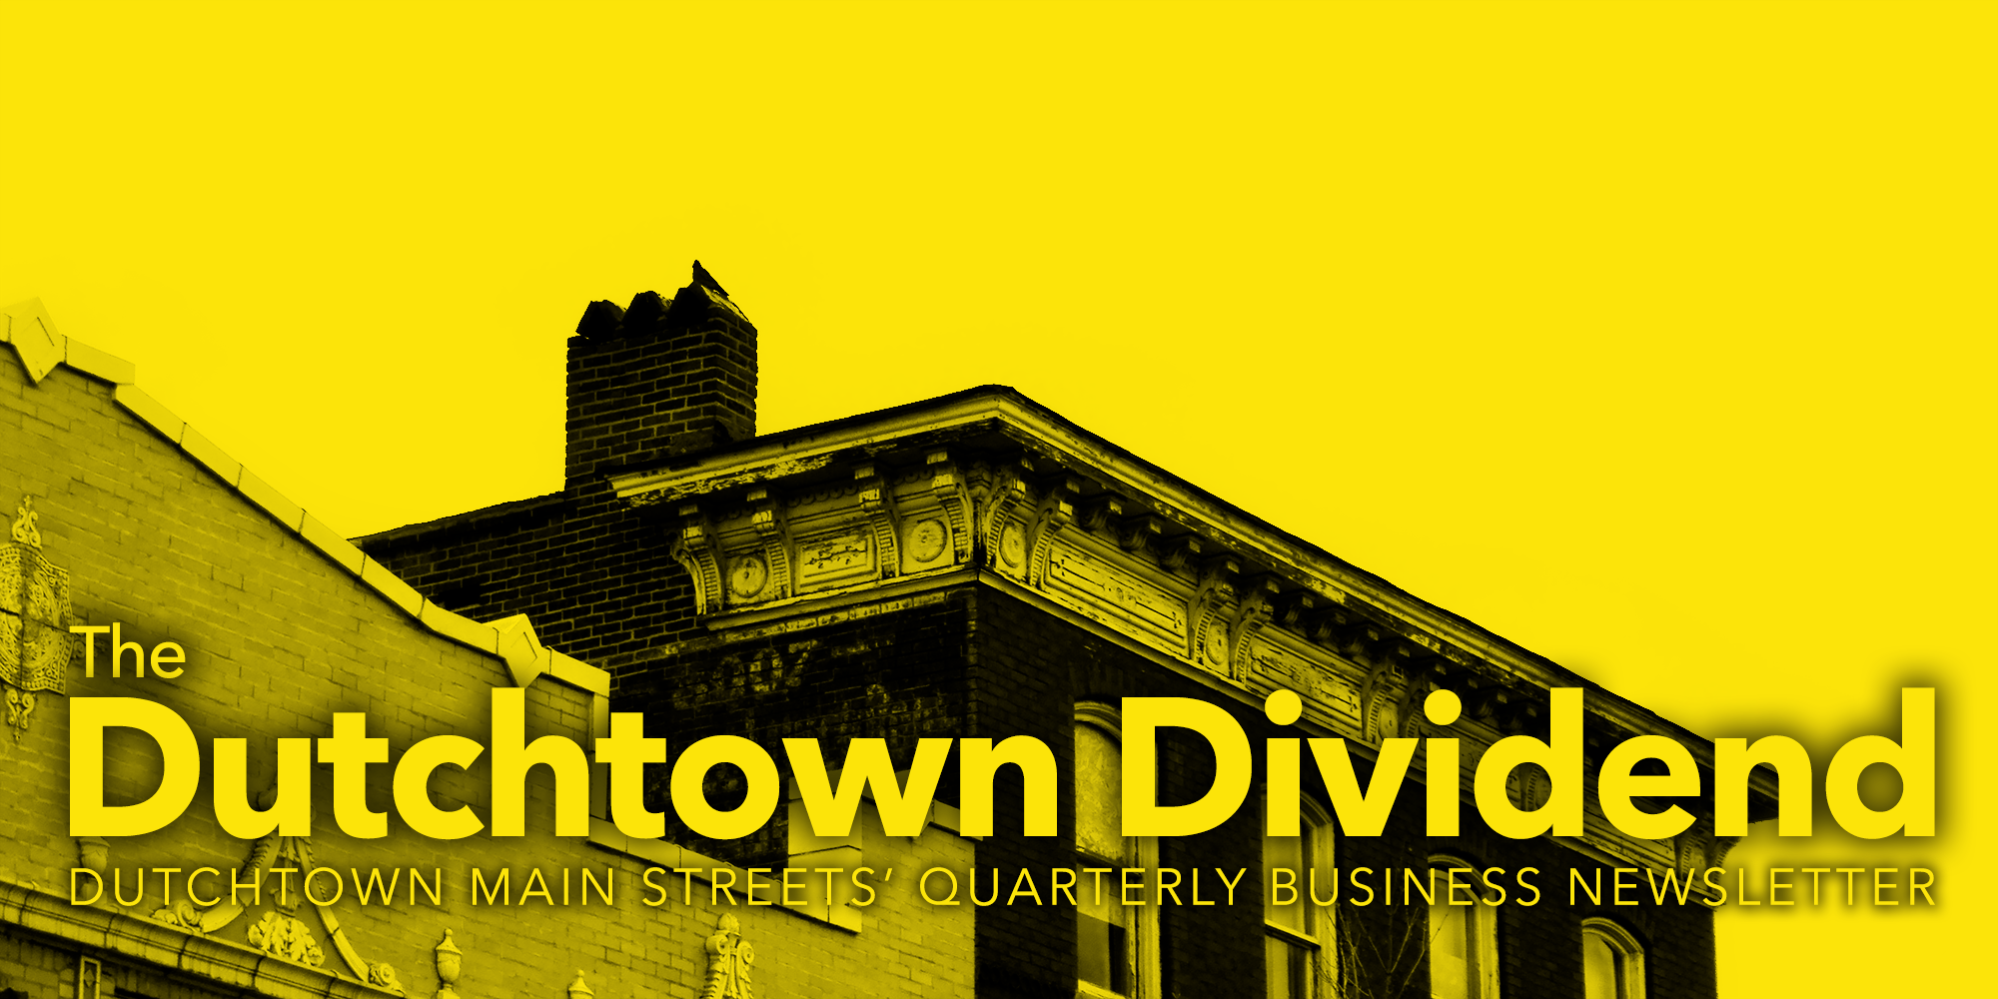 The Dutchtown Dividend , le bulletin d'information trimestriel sur les affaires de Dutchtown Main Streets.